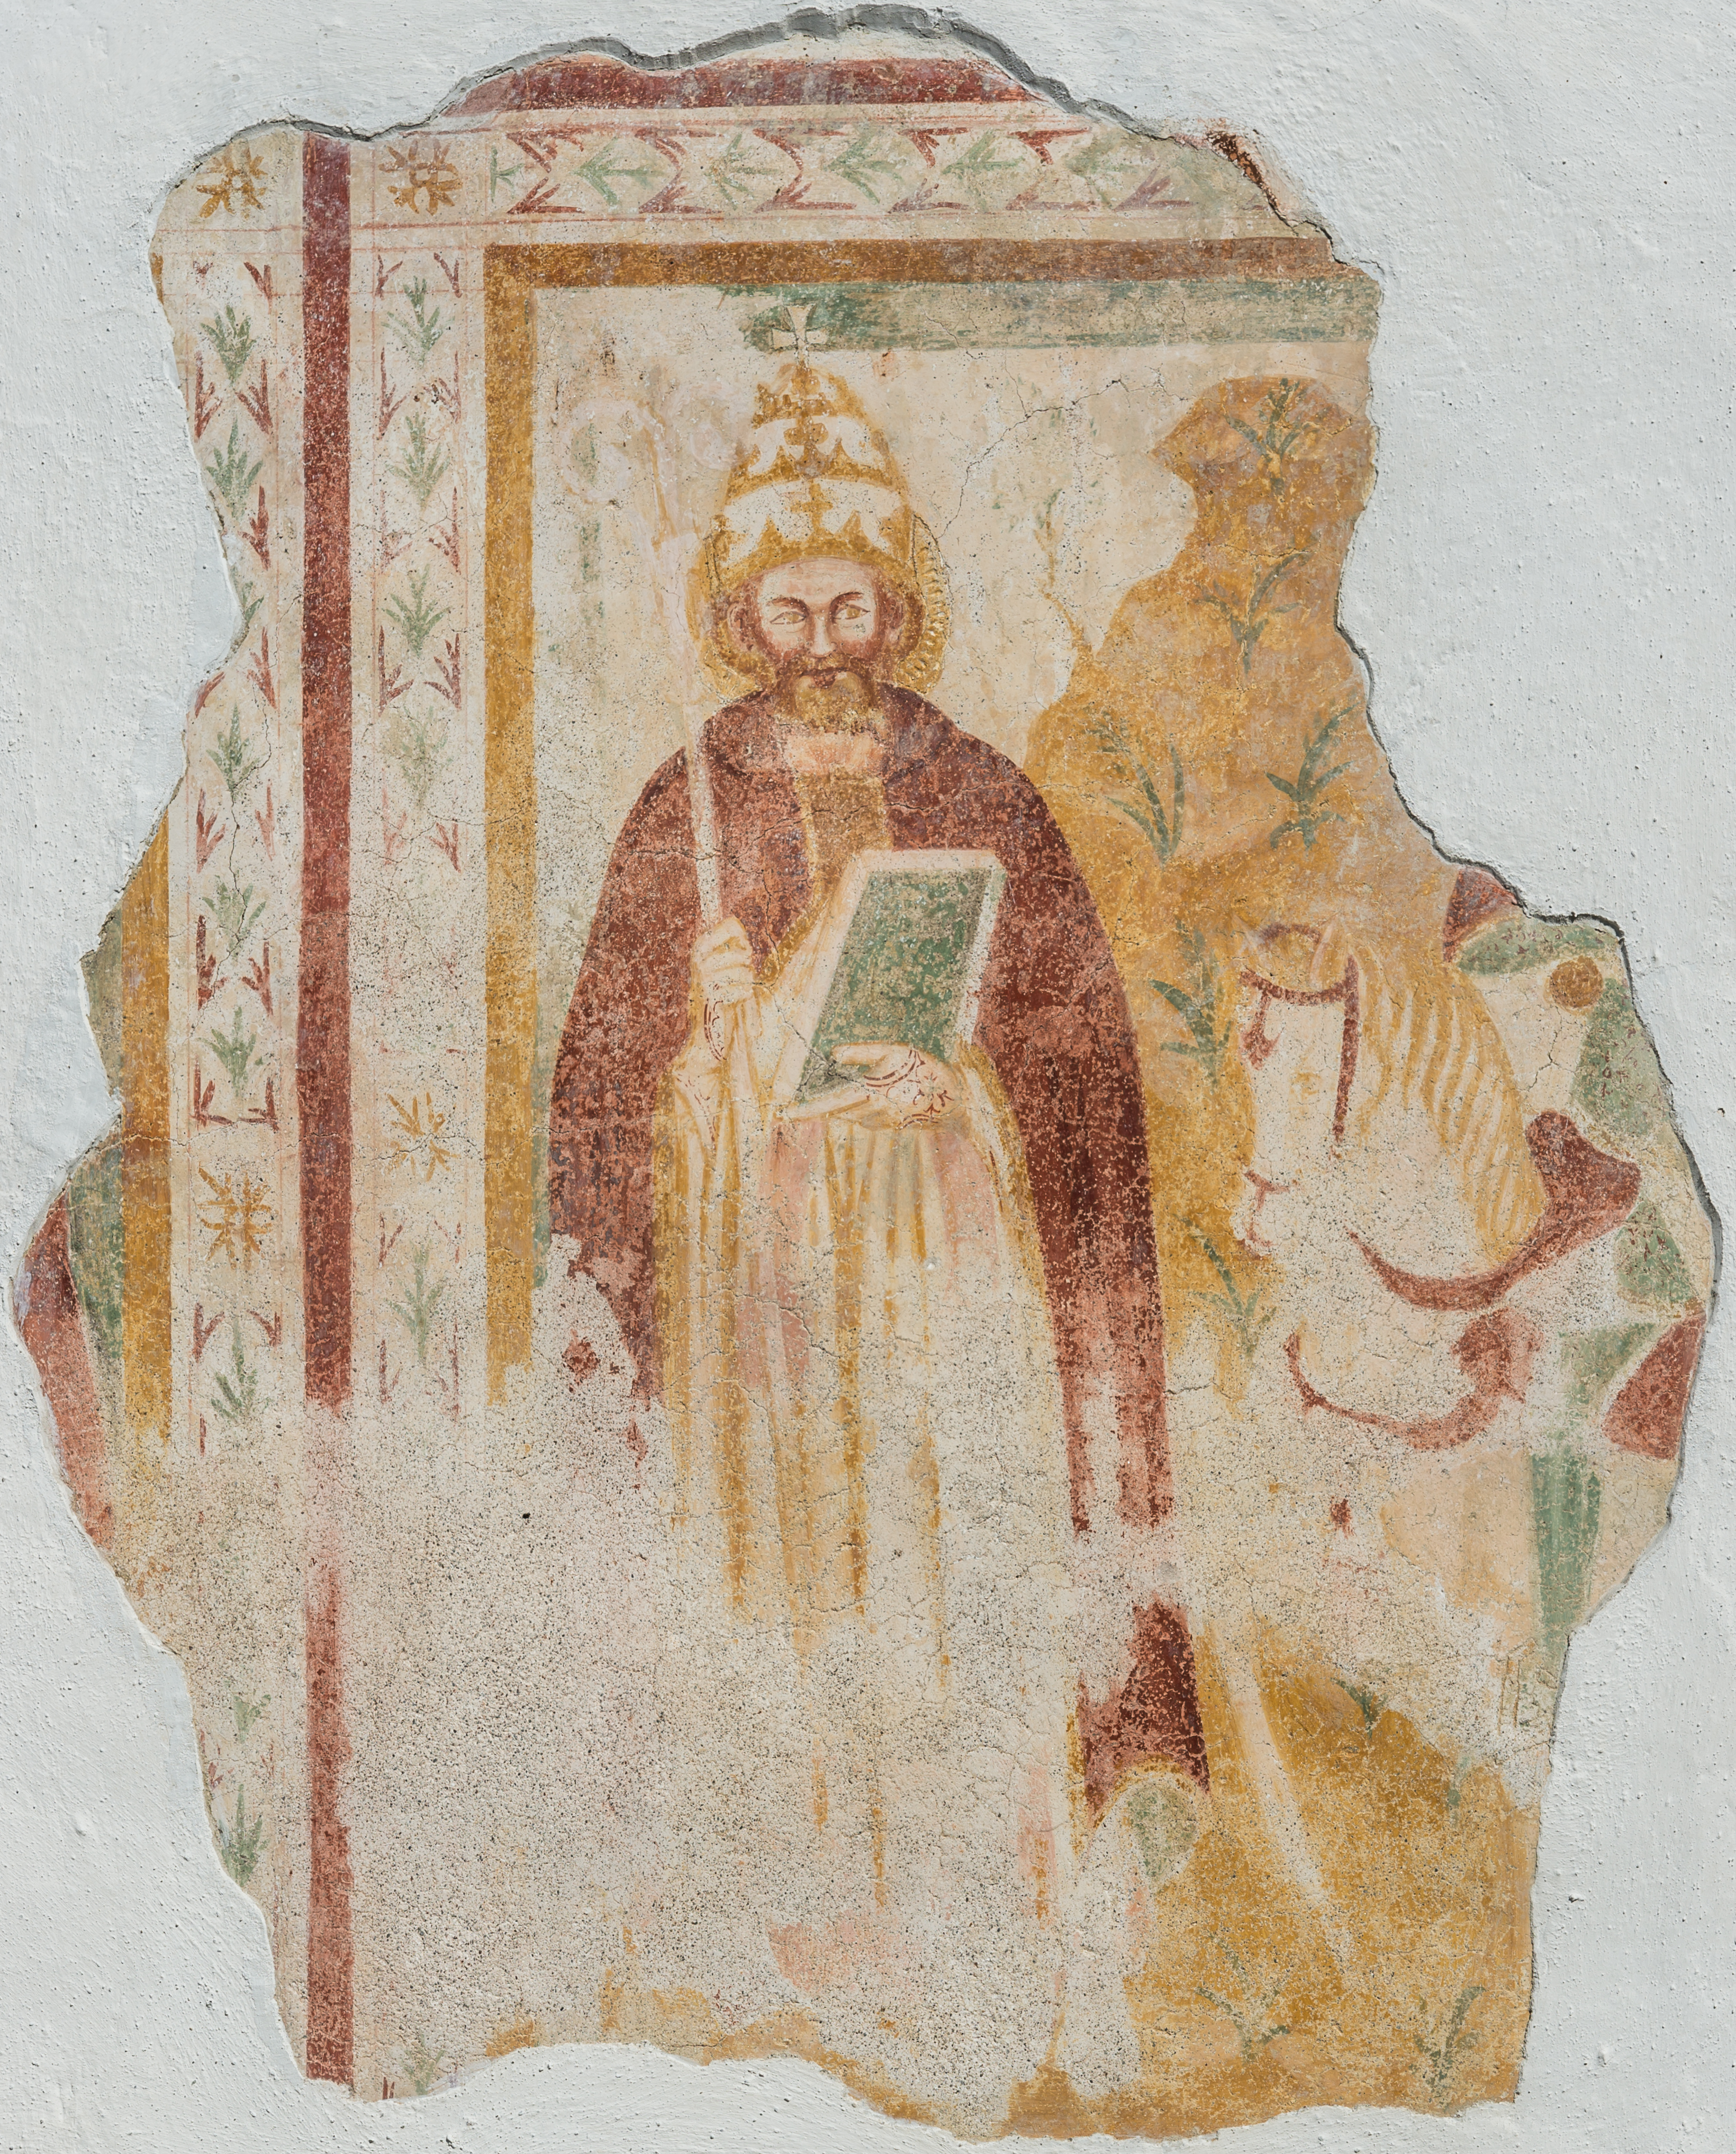 Maria Saal Lind Filialkirche hl Martin Fresko-Fragment mit Papst-Darstellung 21092016 4387